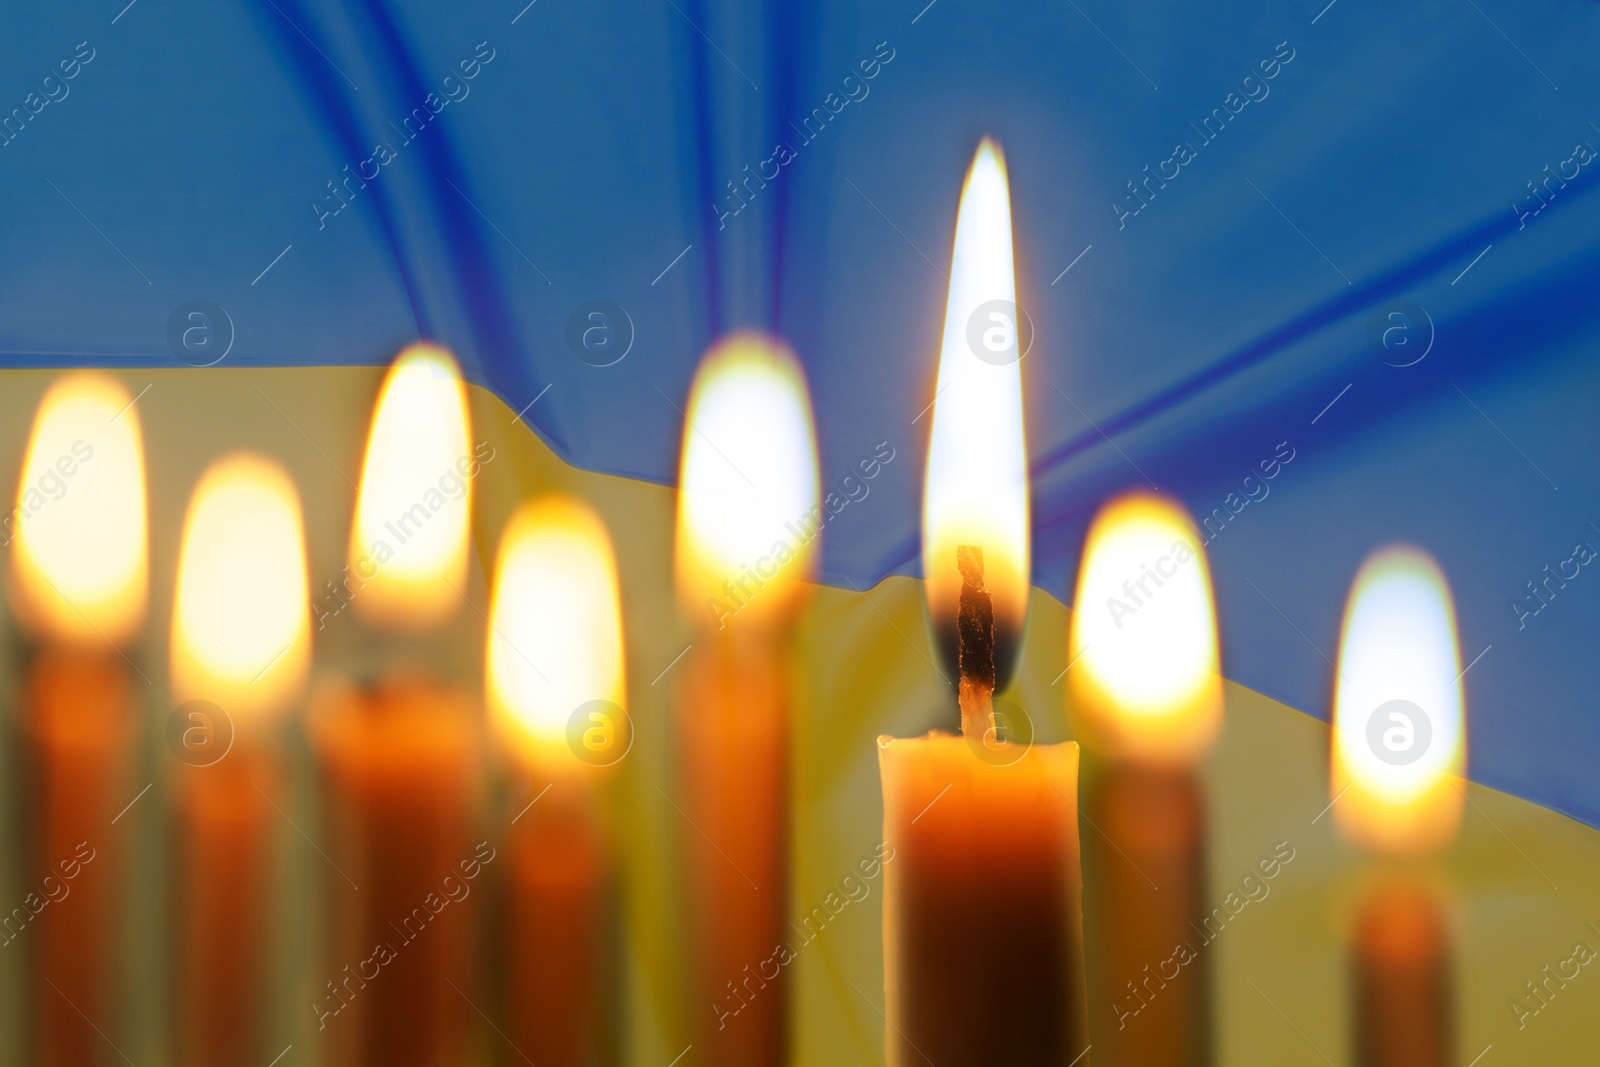 Image of Burning candles and Ukrainian national flag on background, closeup